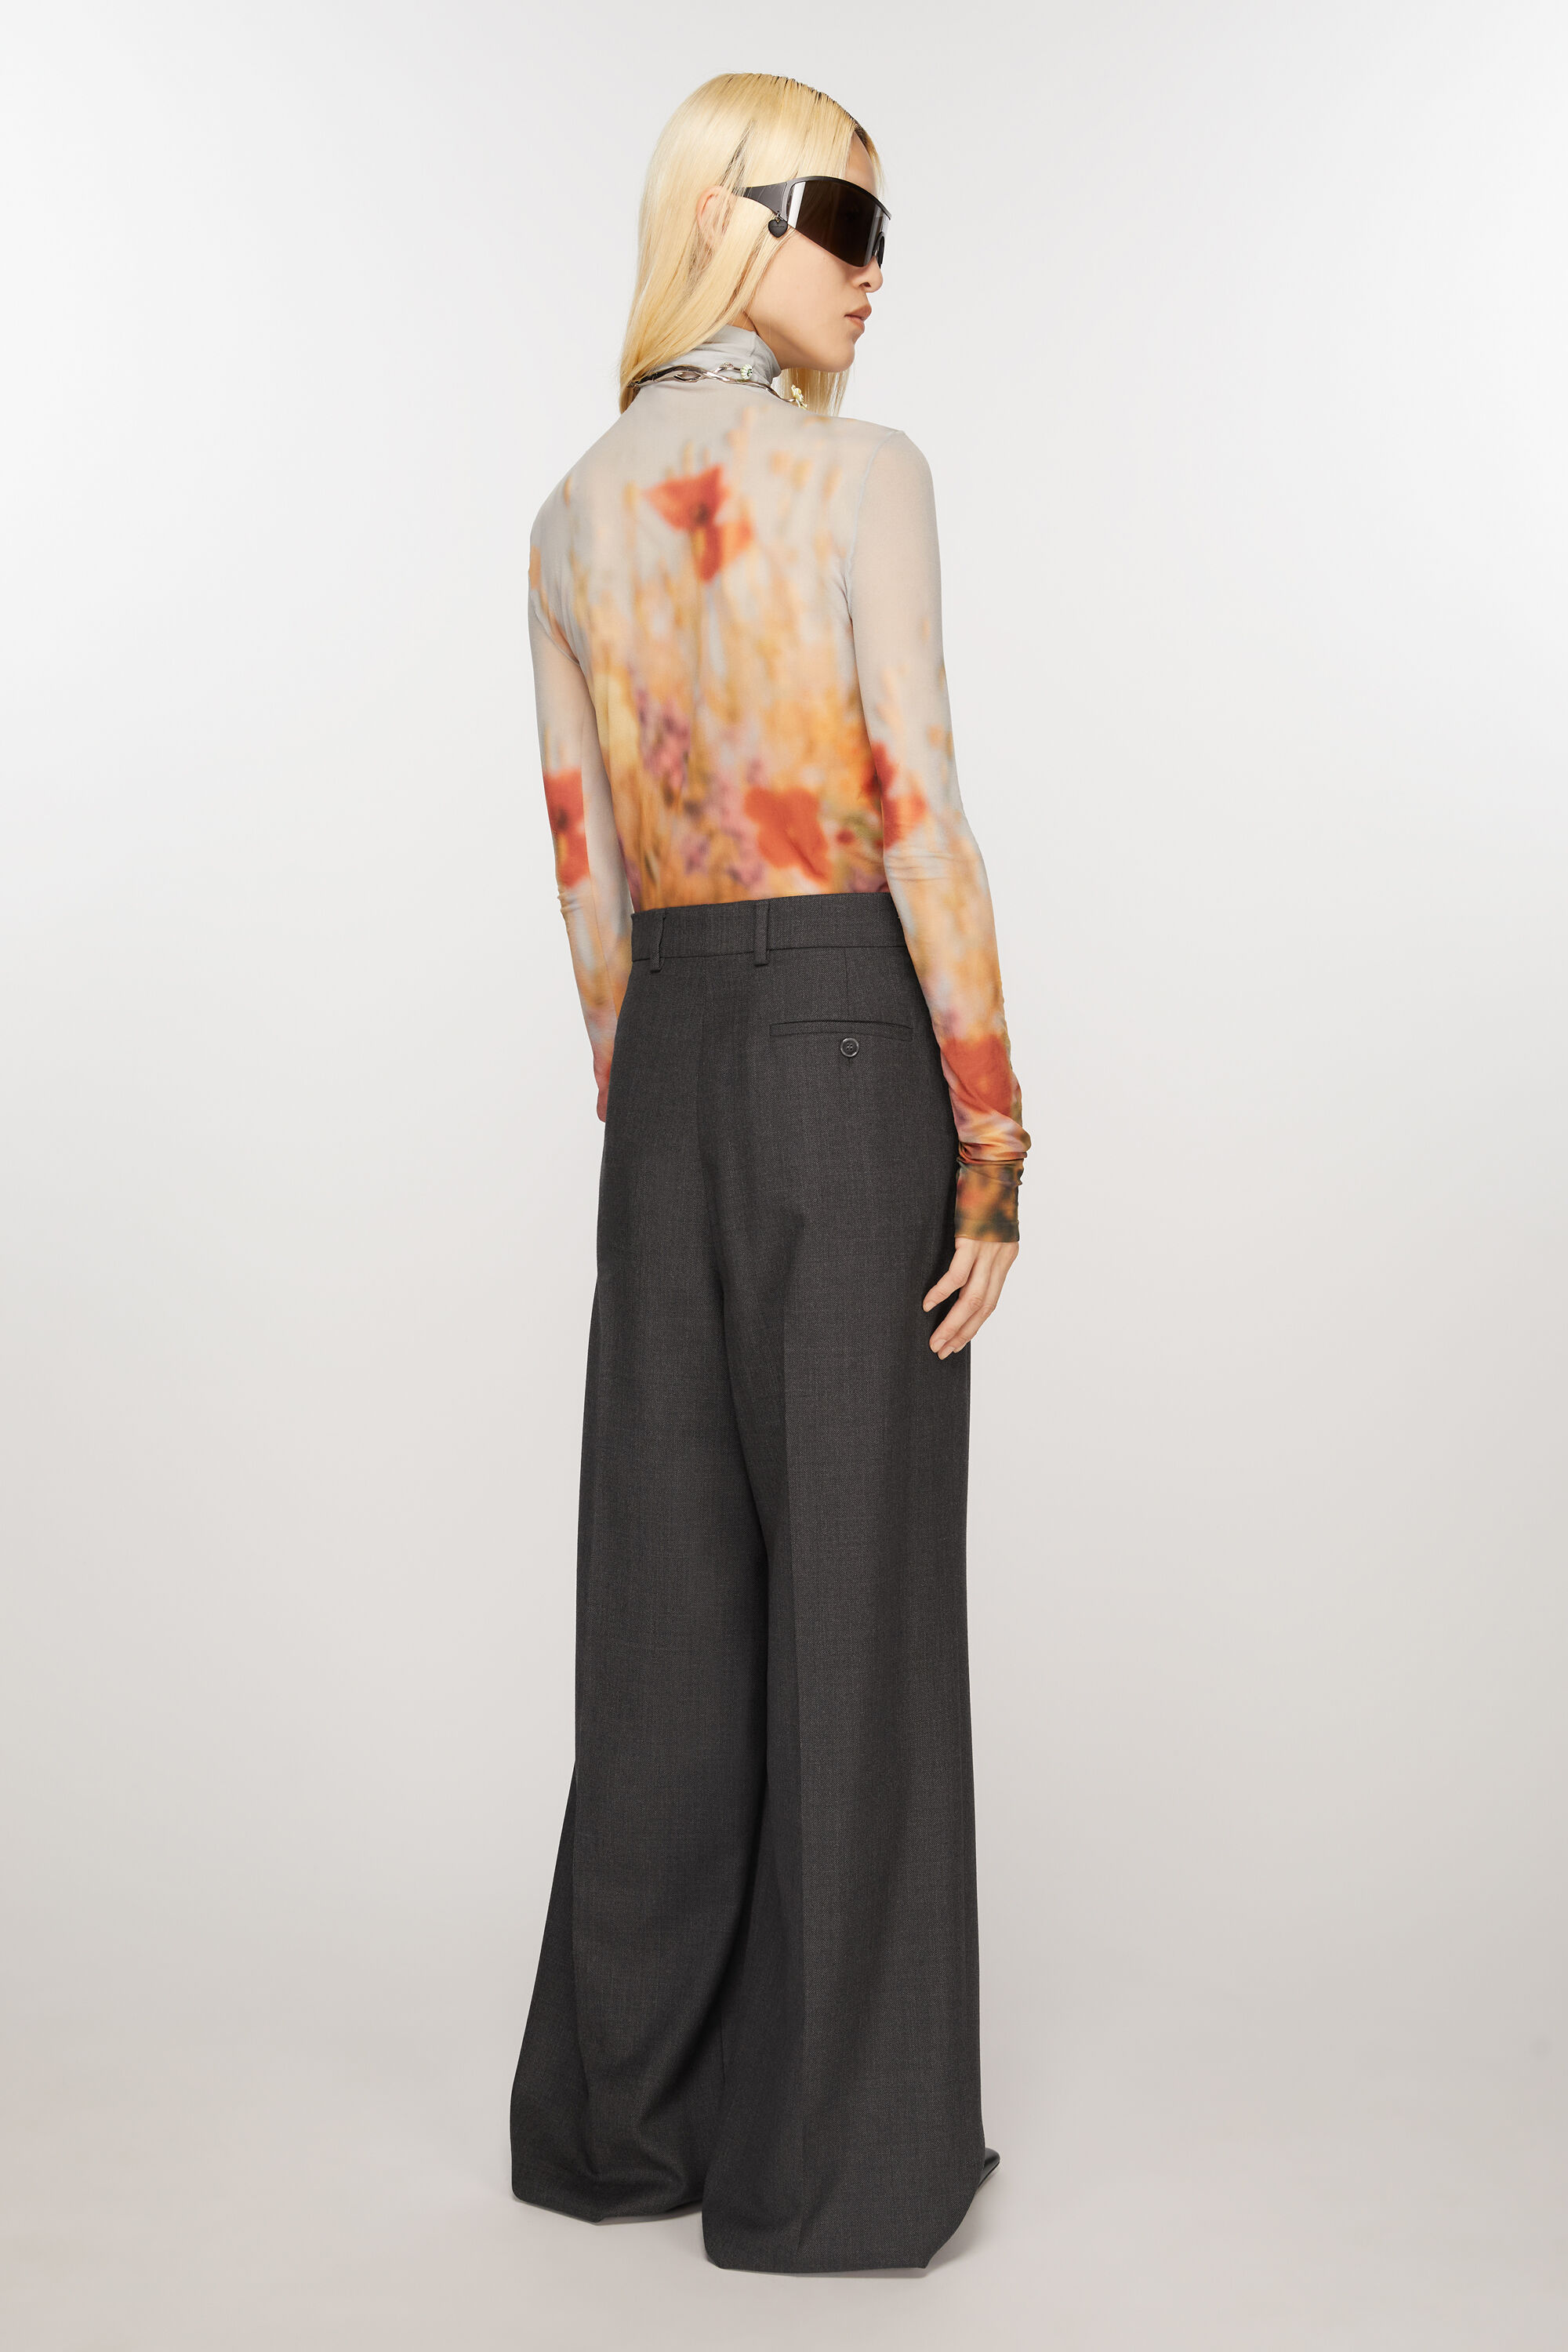 Monse Deconstructed Pinstriped Trouser Skirt - Farfetch